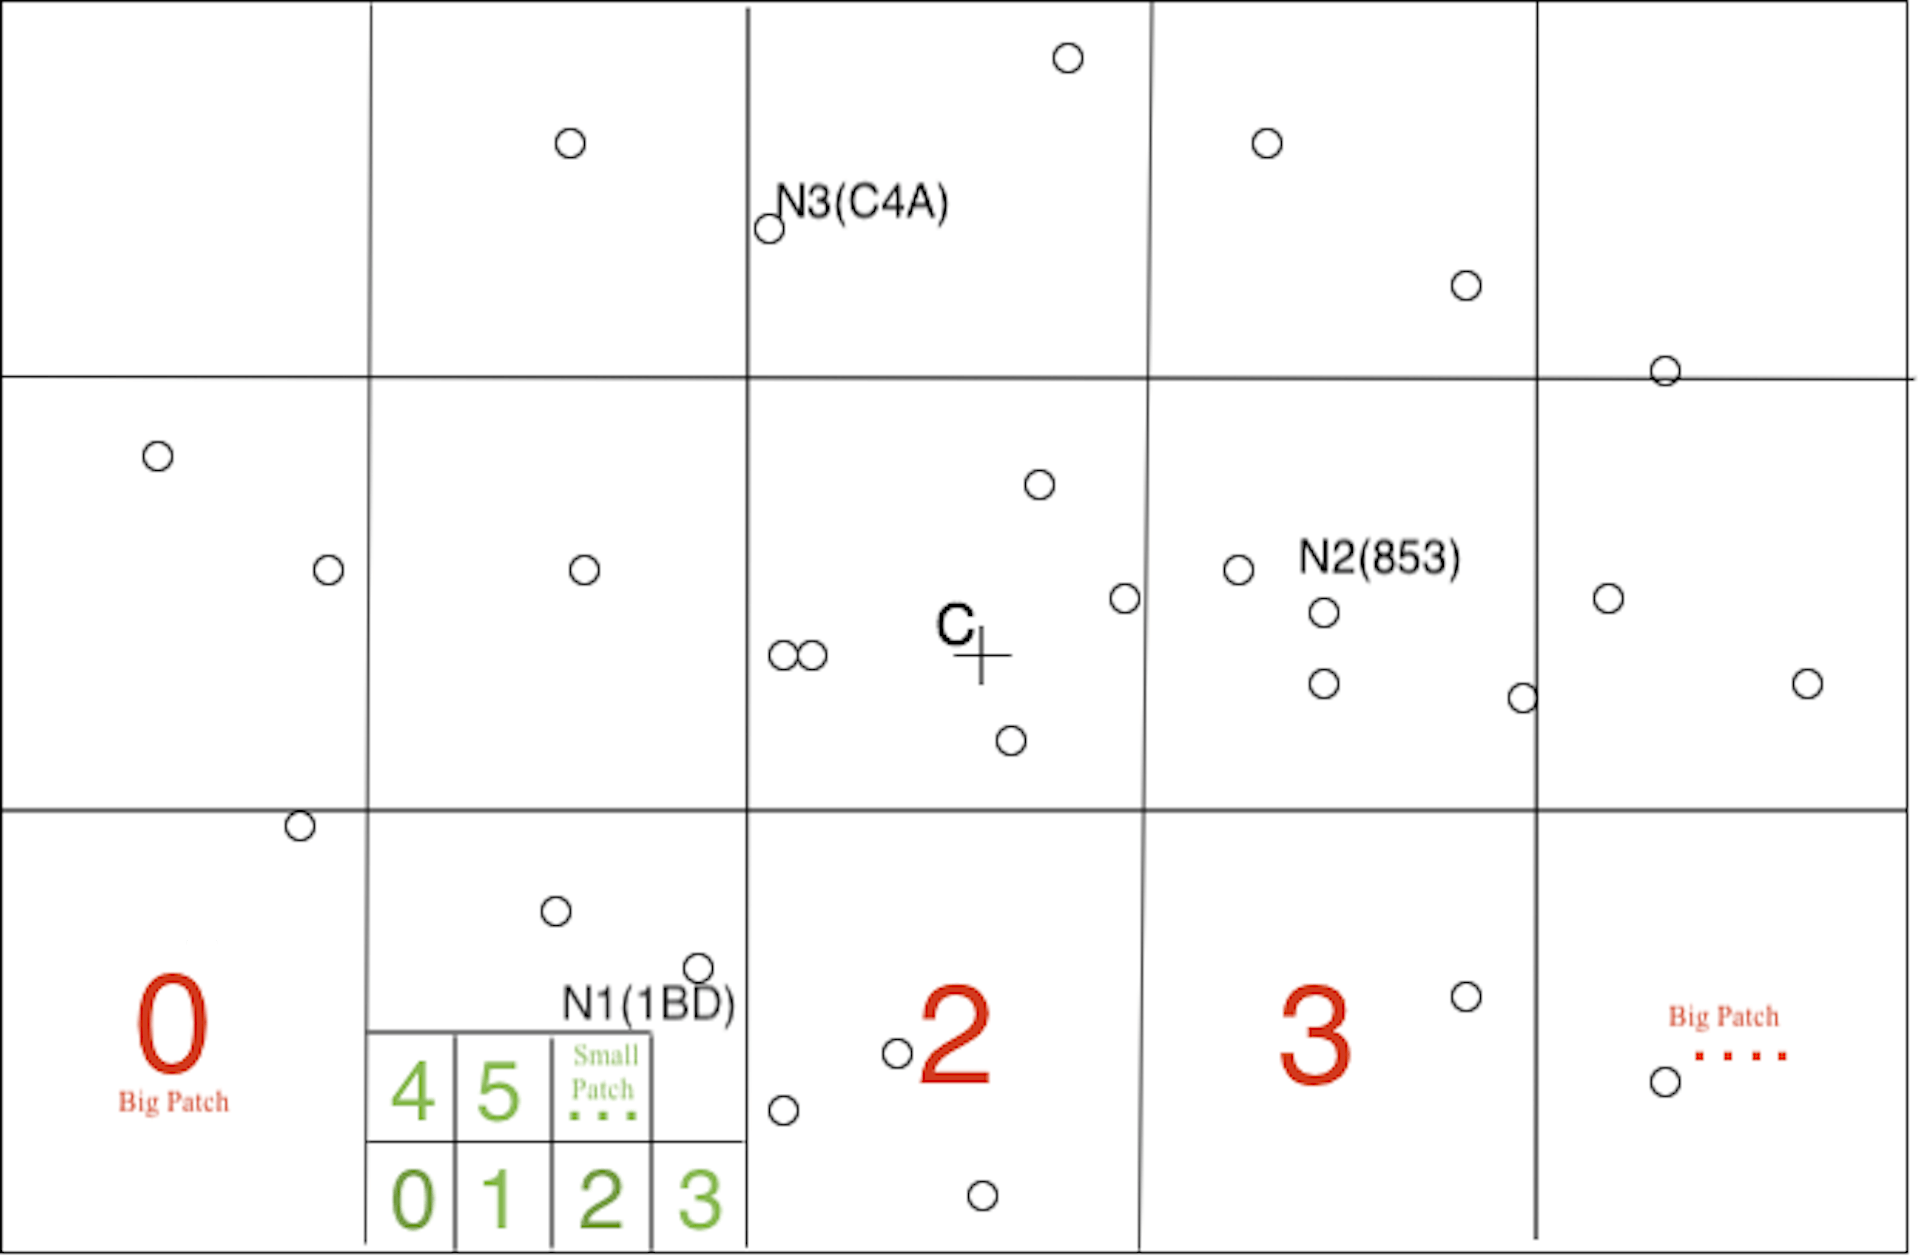 Network Coordinates of N1, N2 & N3